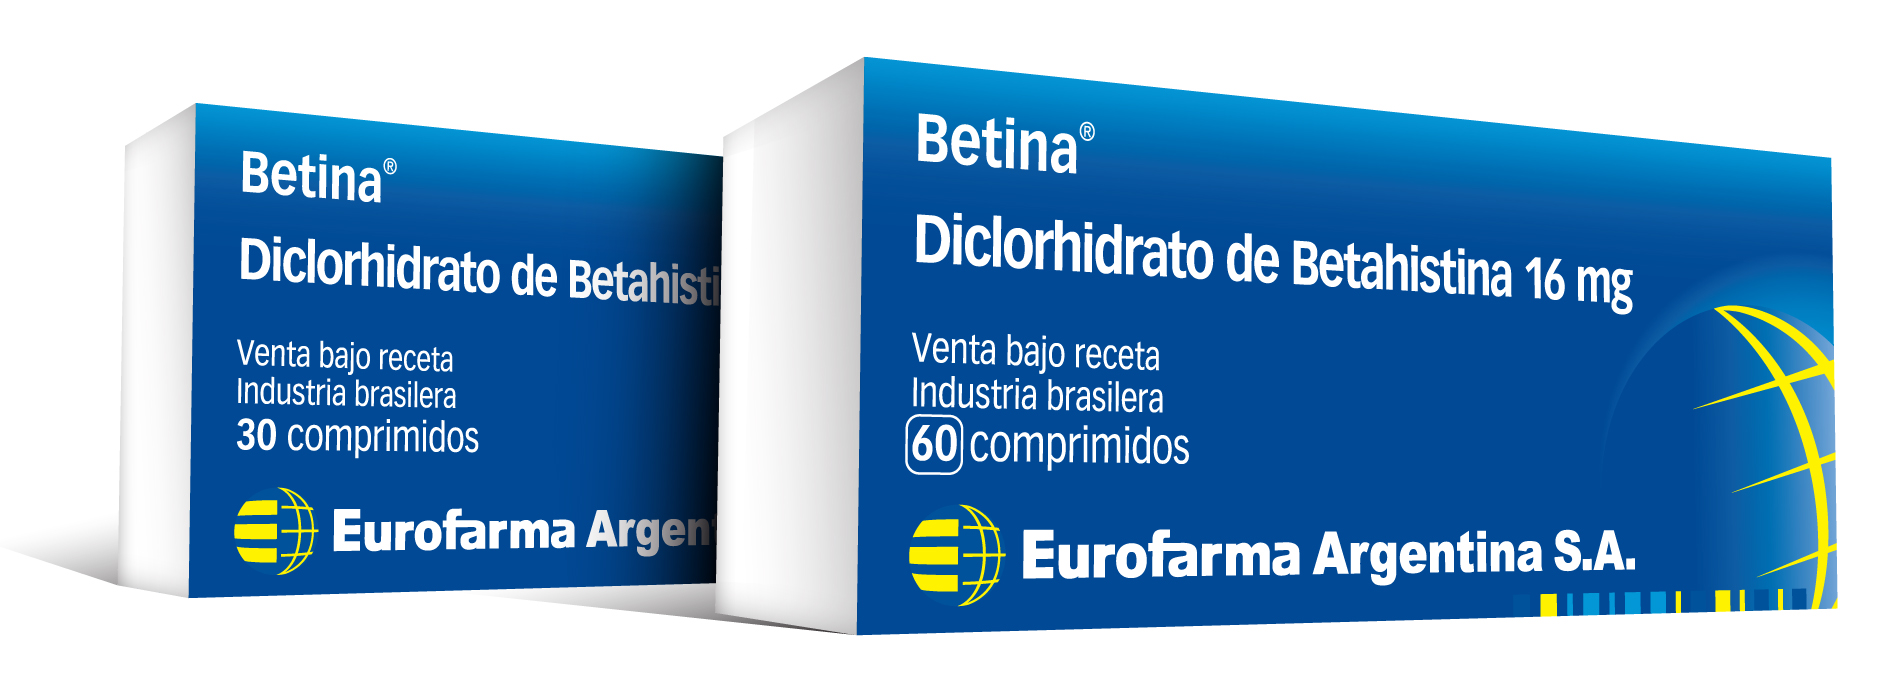 Betina - Eurofarma